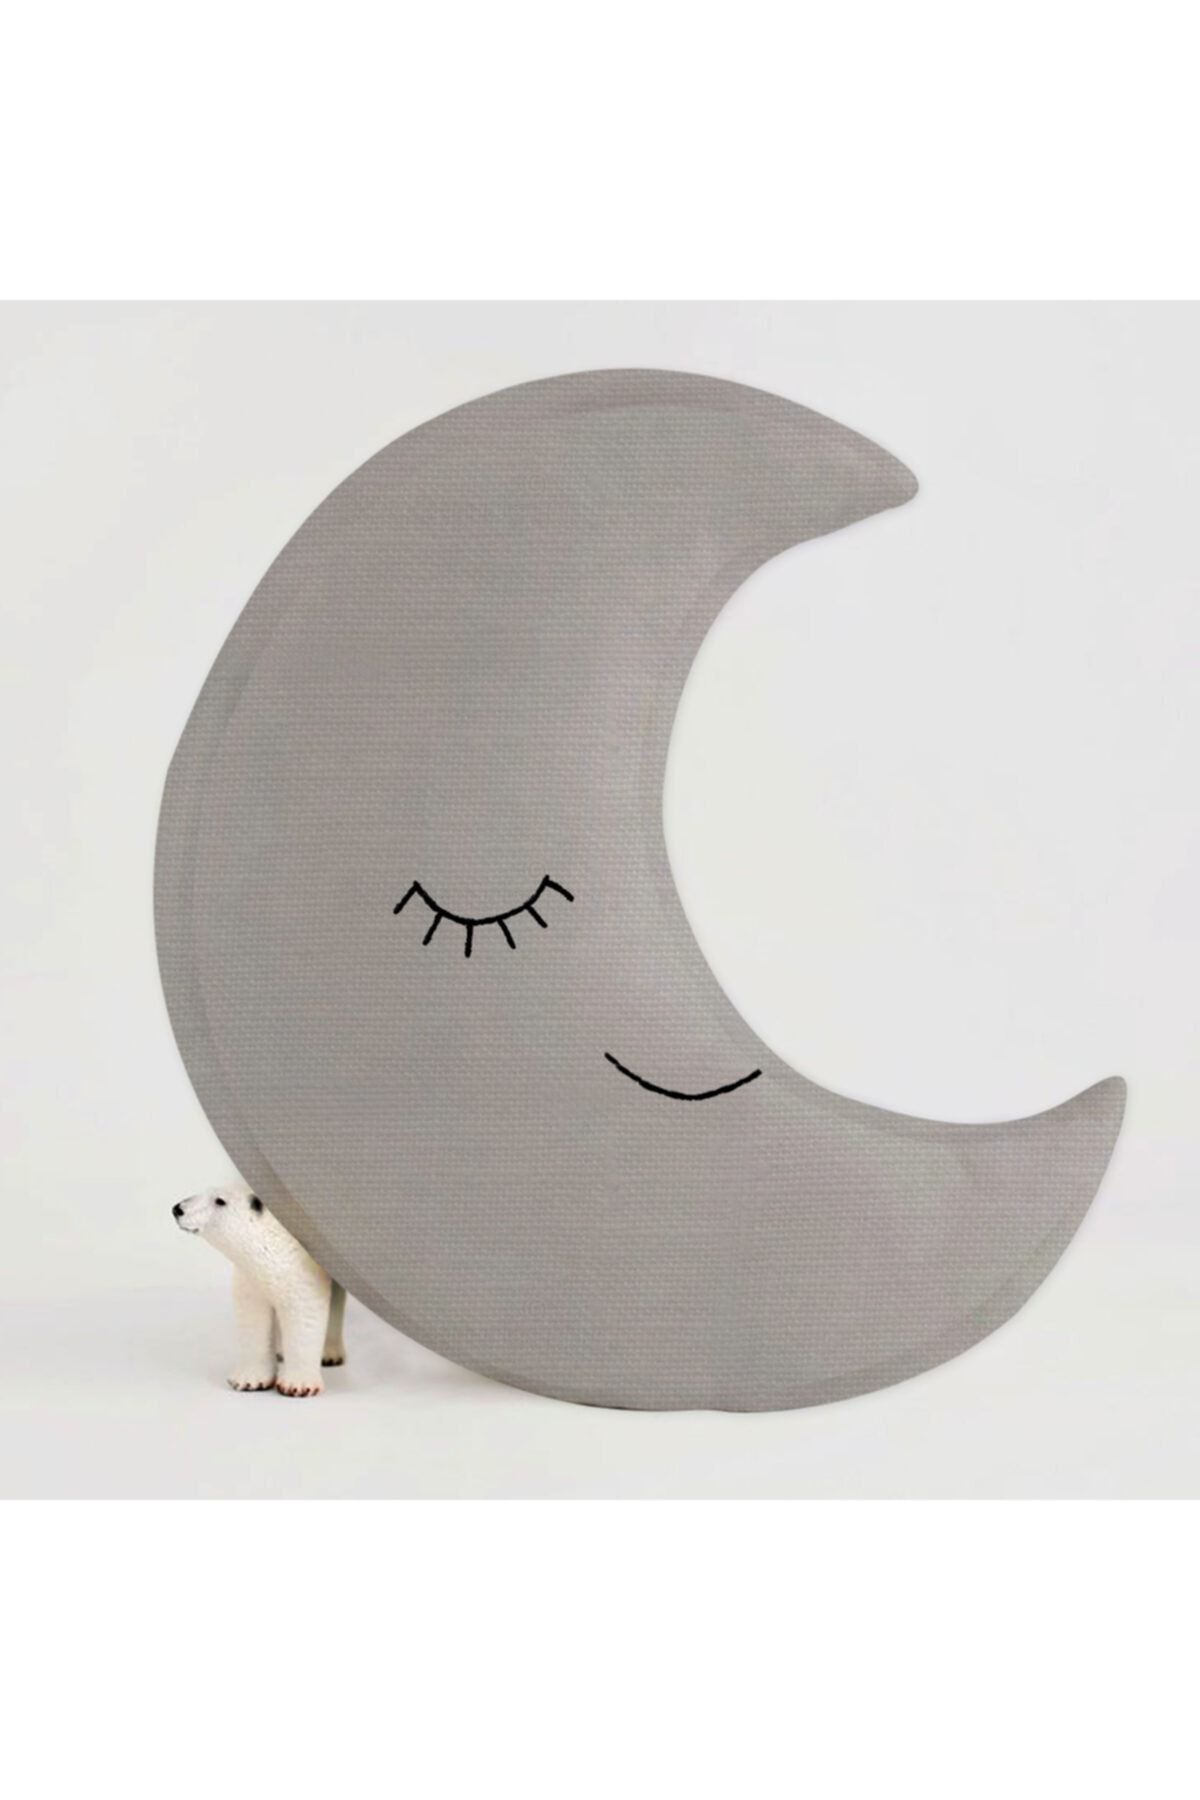 Miomundo Bebek & Çocuk Odası Ay Dekoratif Yastık Uyku Arkadaşı Gri